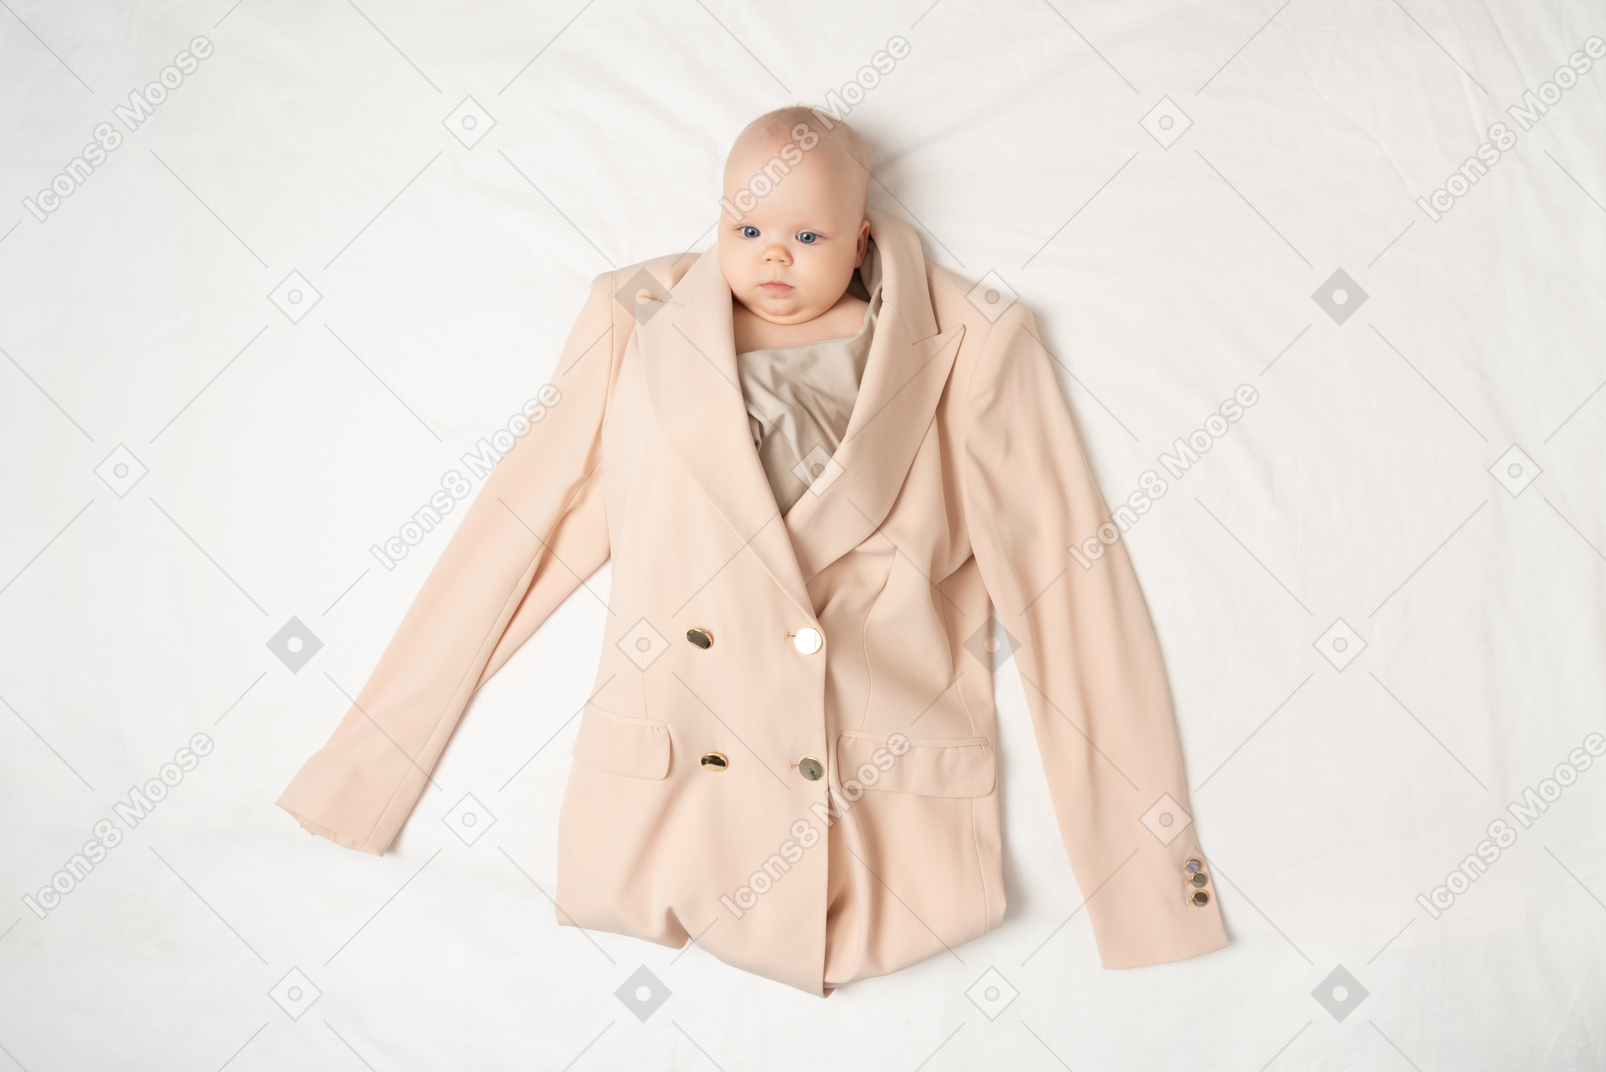 Baby in der jacke und in der bluse des erwachsenen